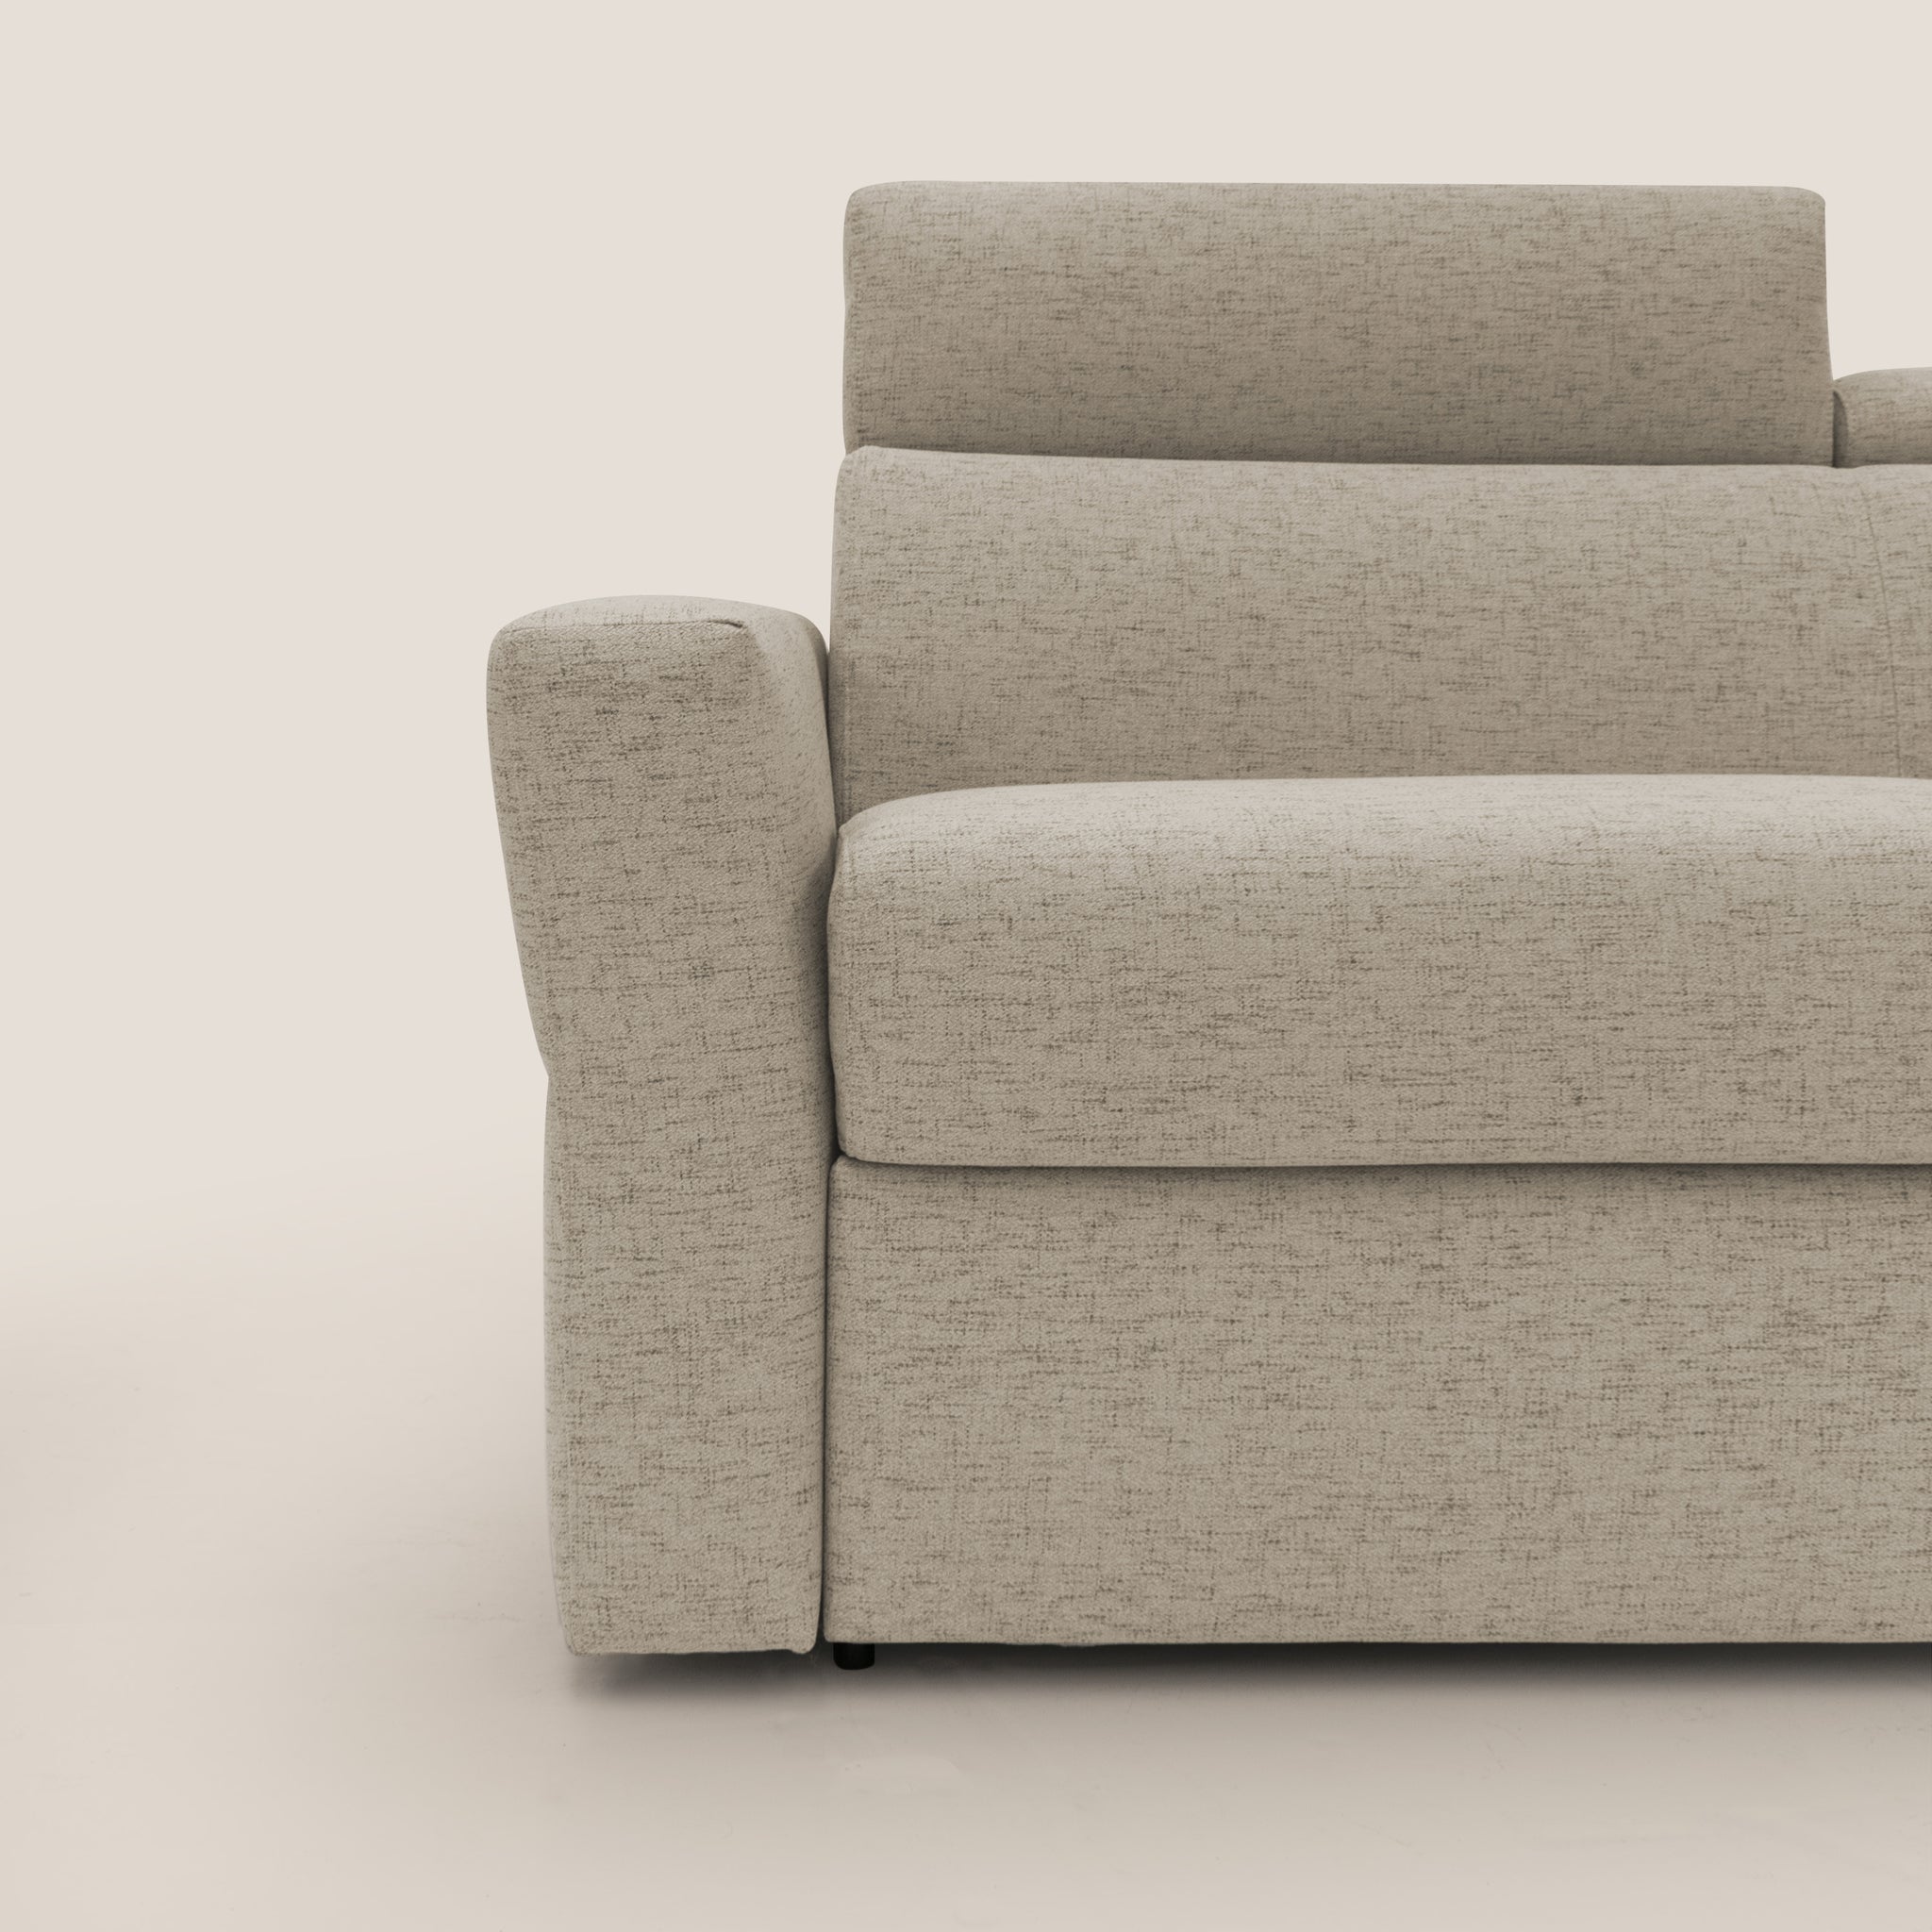 Avalon divano letto con materasso alto 18 cm in tessuto impermeabile T03